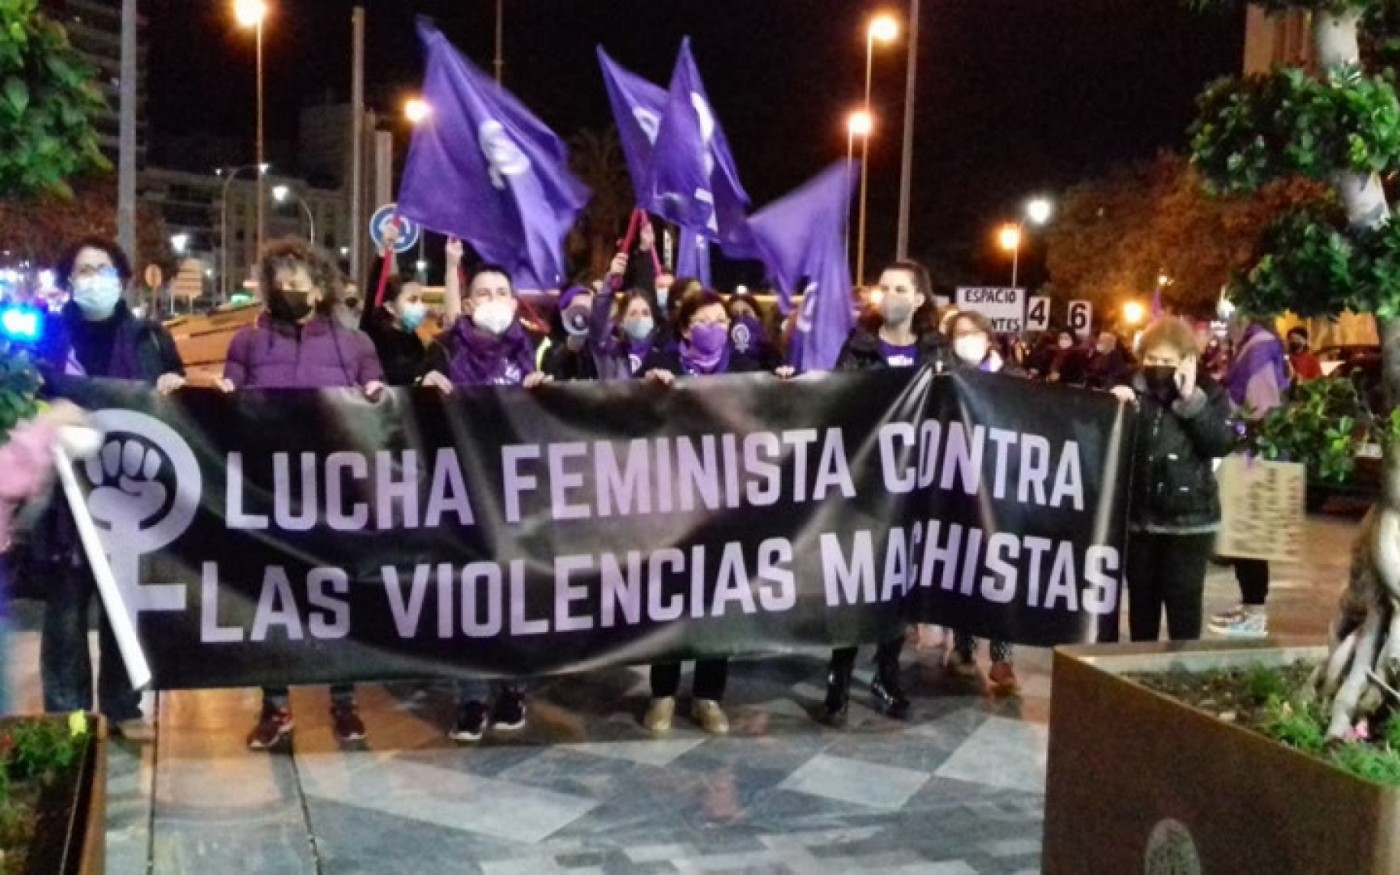 GALERÍA DE IMÁGENES | Actos y protestas contra la violencia de género en distintas localidades